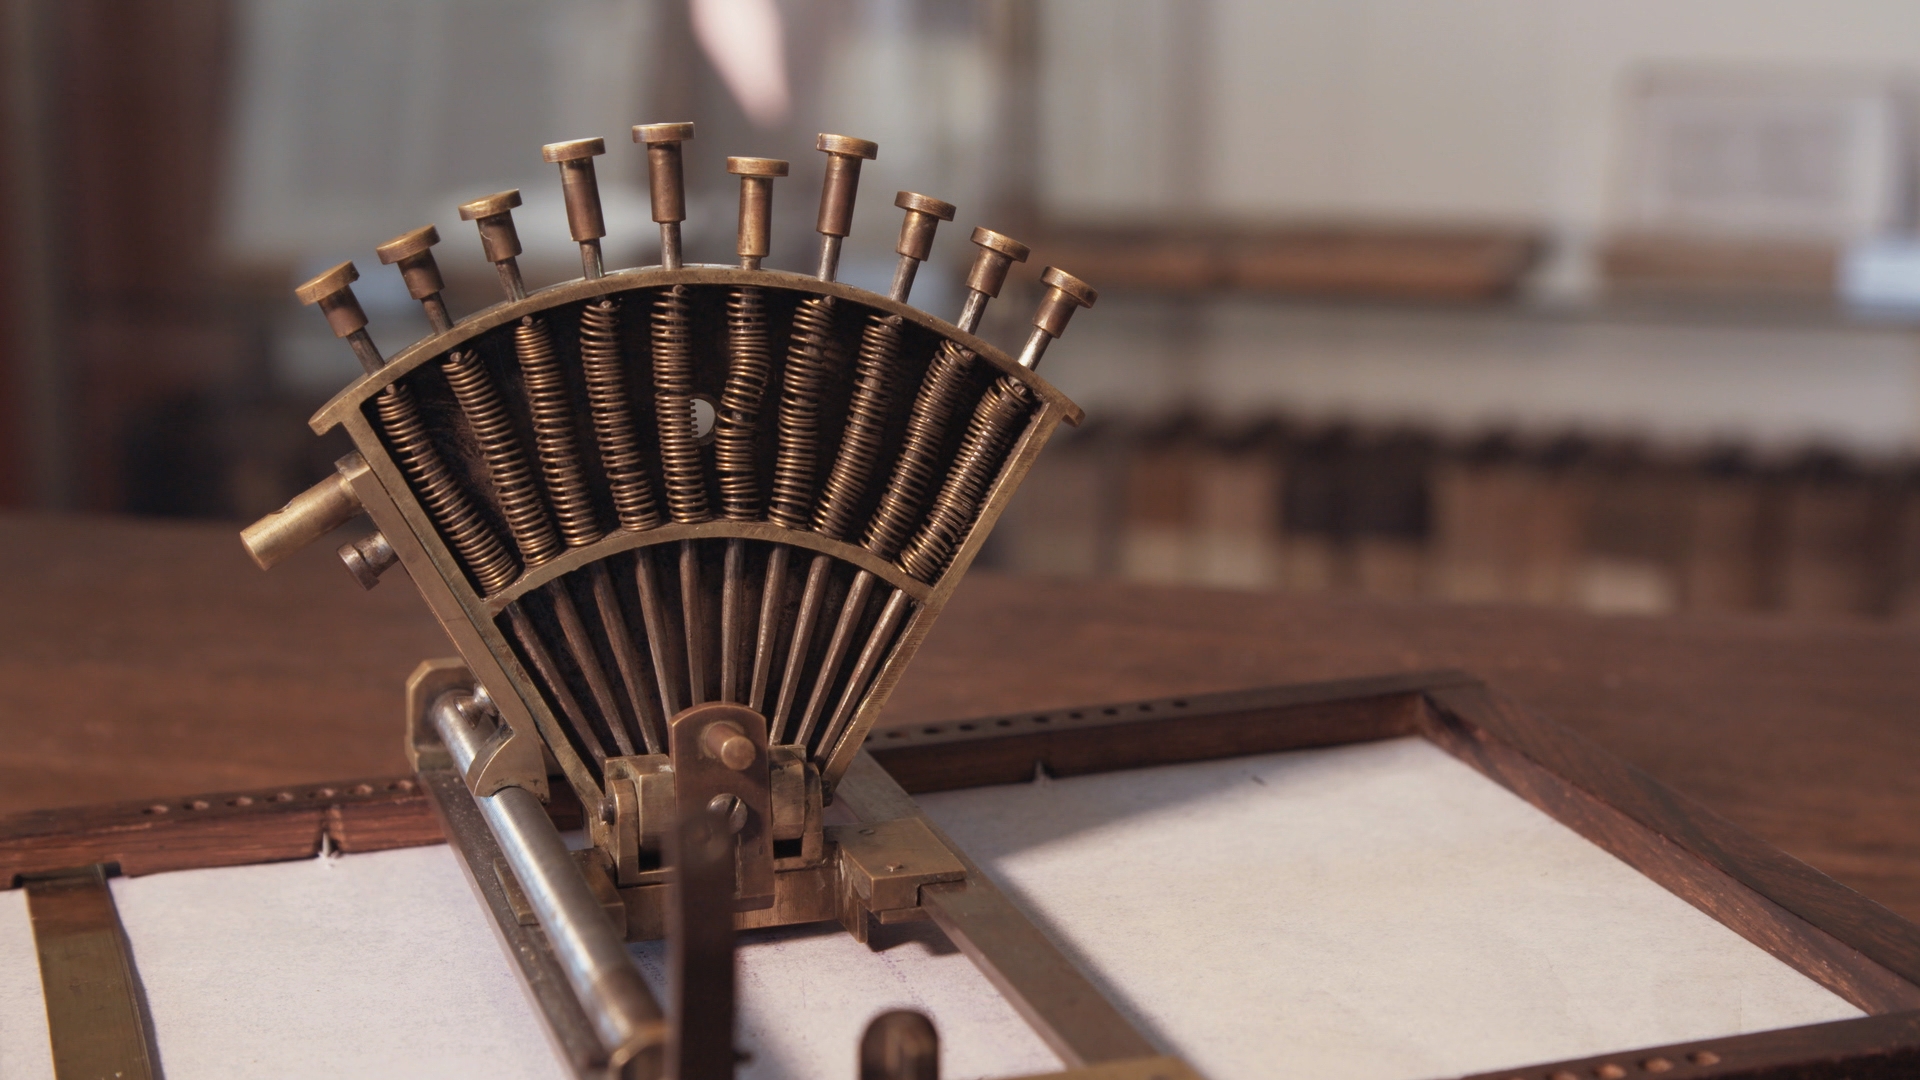 Un raphigraphe, appareil conçu pour écrire en décapoint, l’autre système d’écriture inventé par Braille